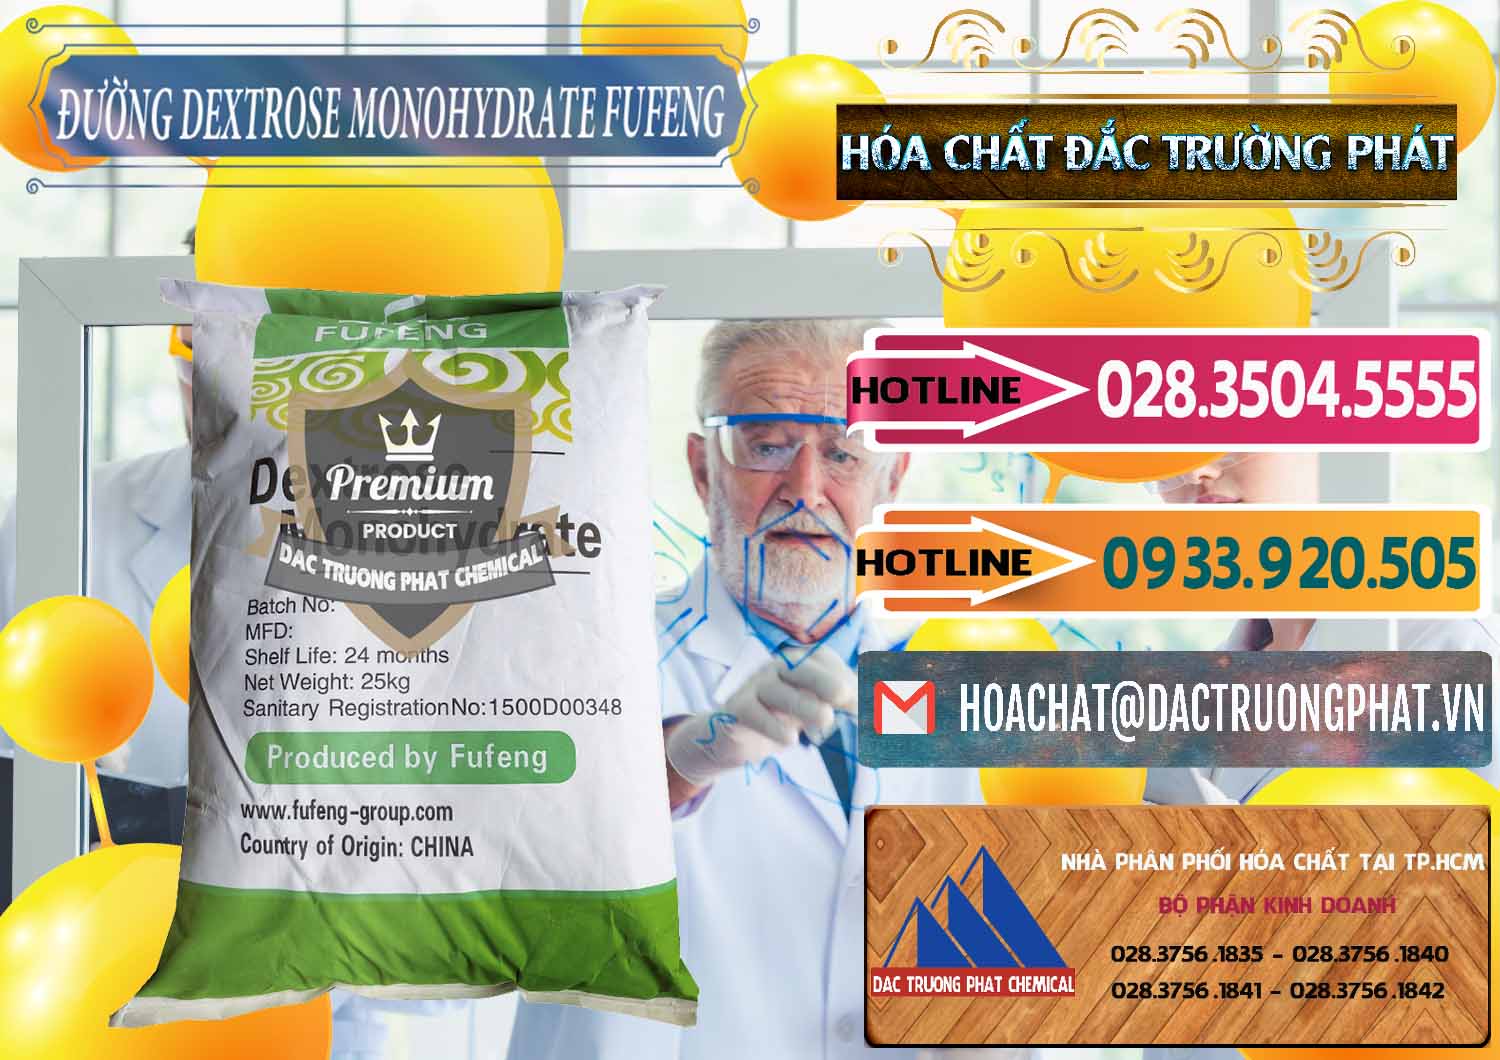 Đơn vị chuyên bán - cung cấp Đường Dextrose Monohydrate Food Grade Fufeng Trung Quốc China - 0223 - Chuyên bán và phân phối hóa chất tại TP.HCM - dactruongphat.vn